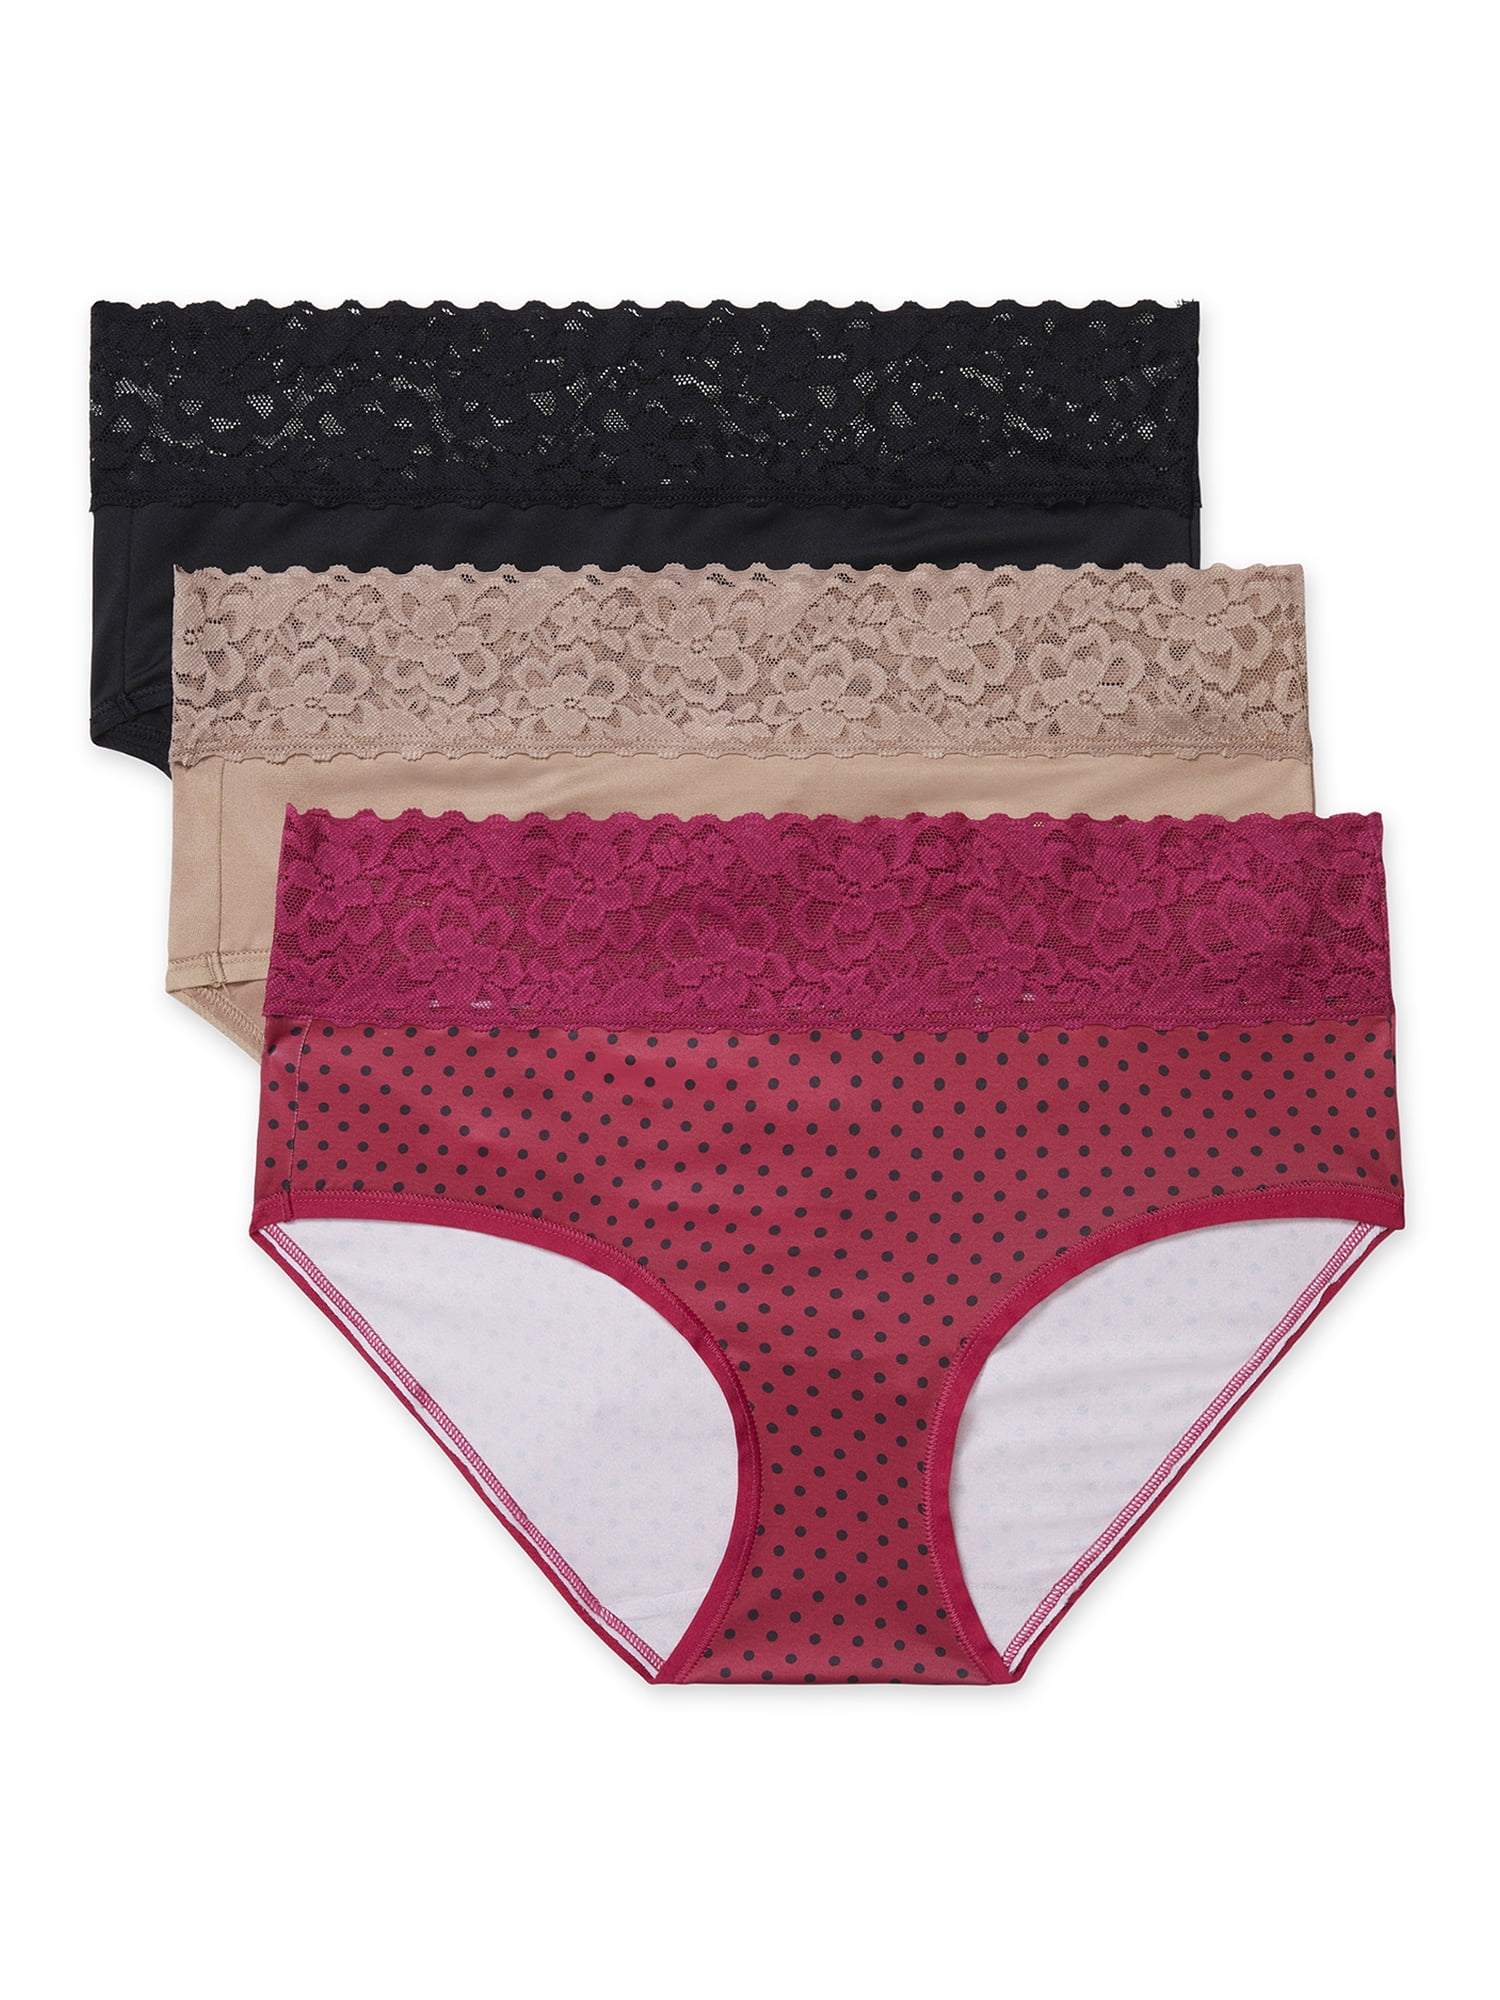 3 Pack Women's Soft Seamless Ultra Thin Briefs Panties Hipster Underwear 